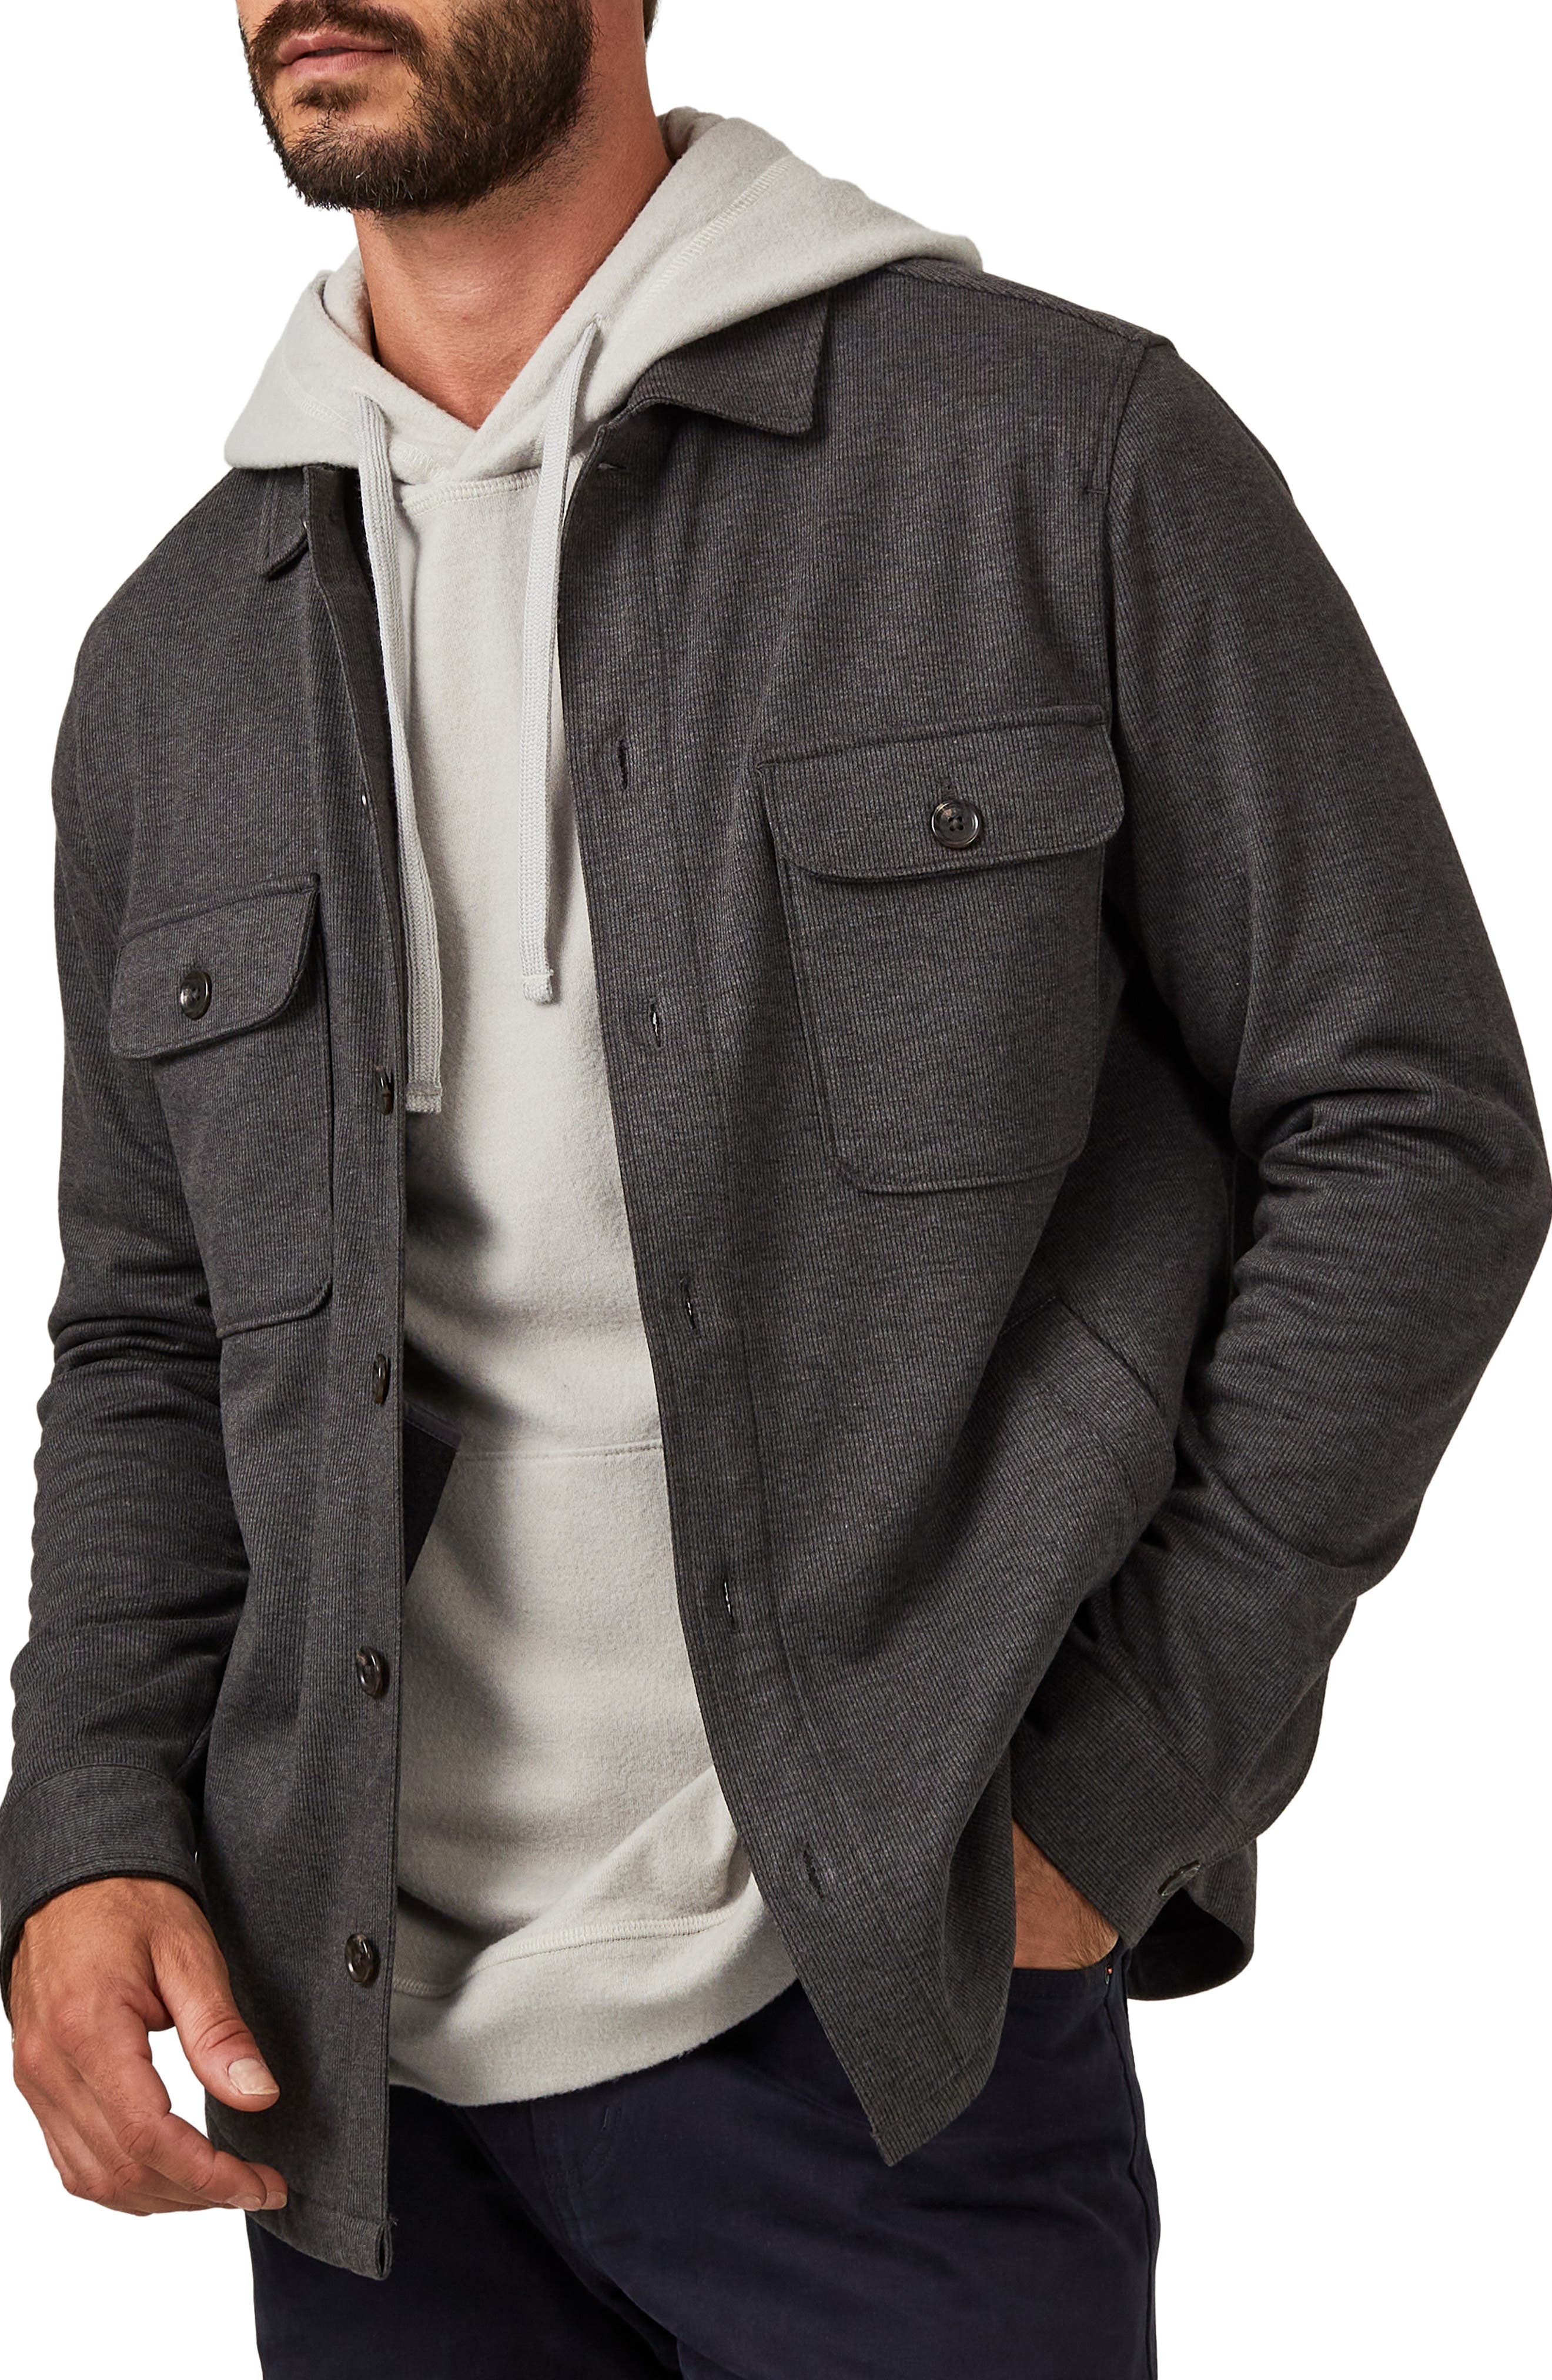 Franco Callegari Shirt Jacket grey brown casual look Fashion Jackets Shirt Jackets 